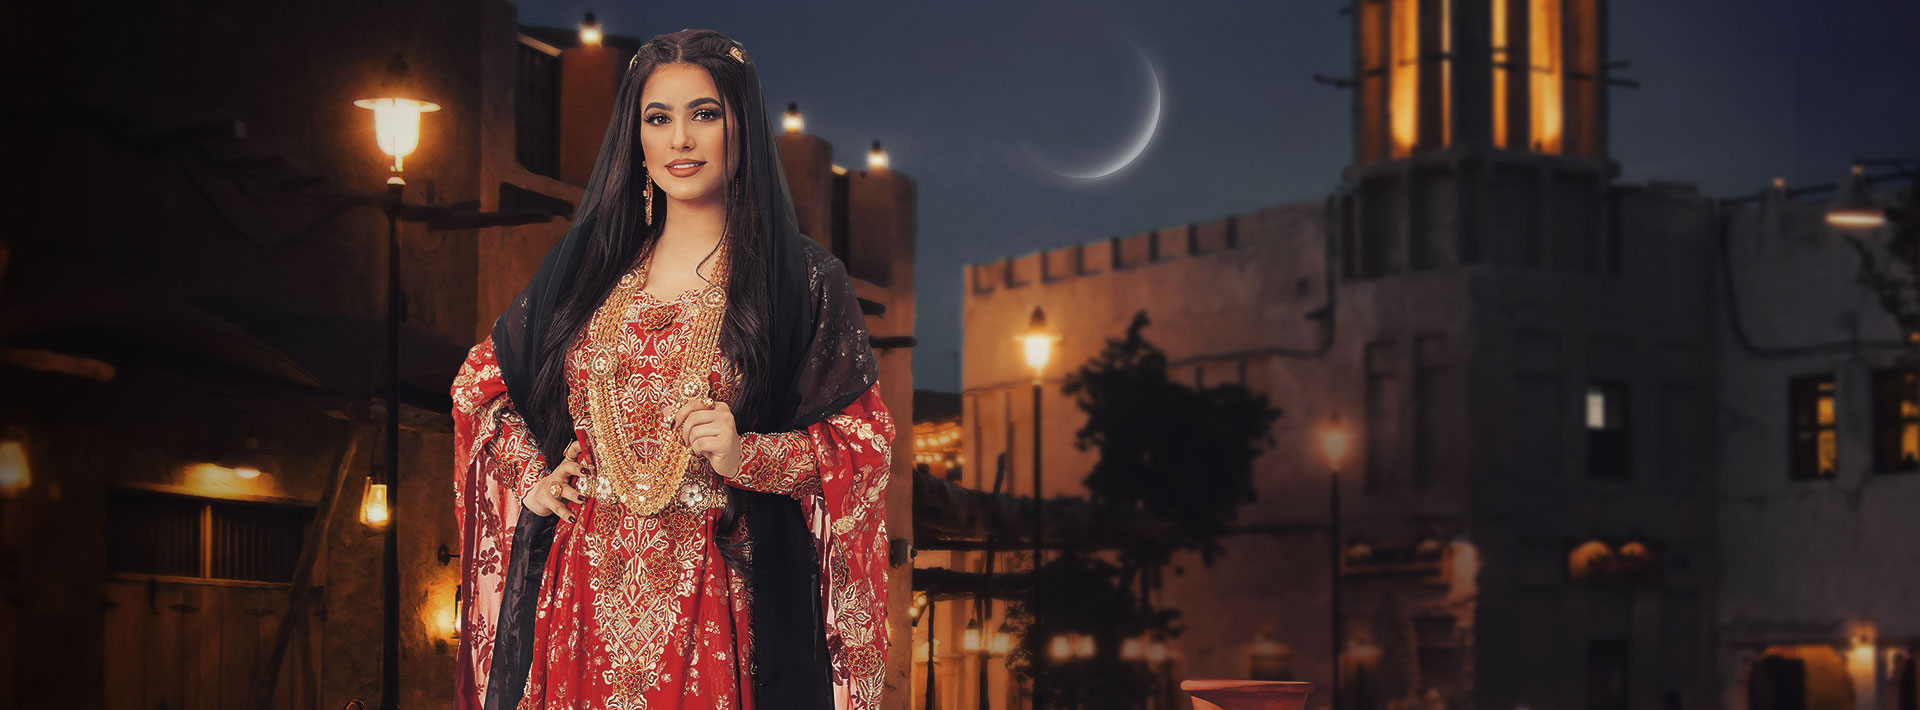 موعد وتوقيت عرض مسلسلات قناة الإمارات في رمضان 2020